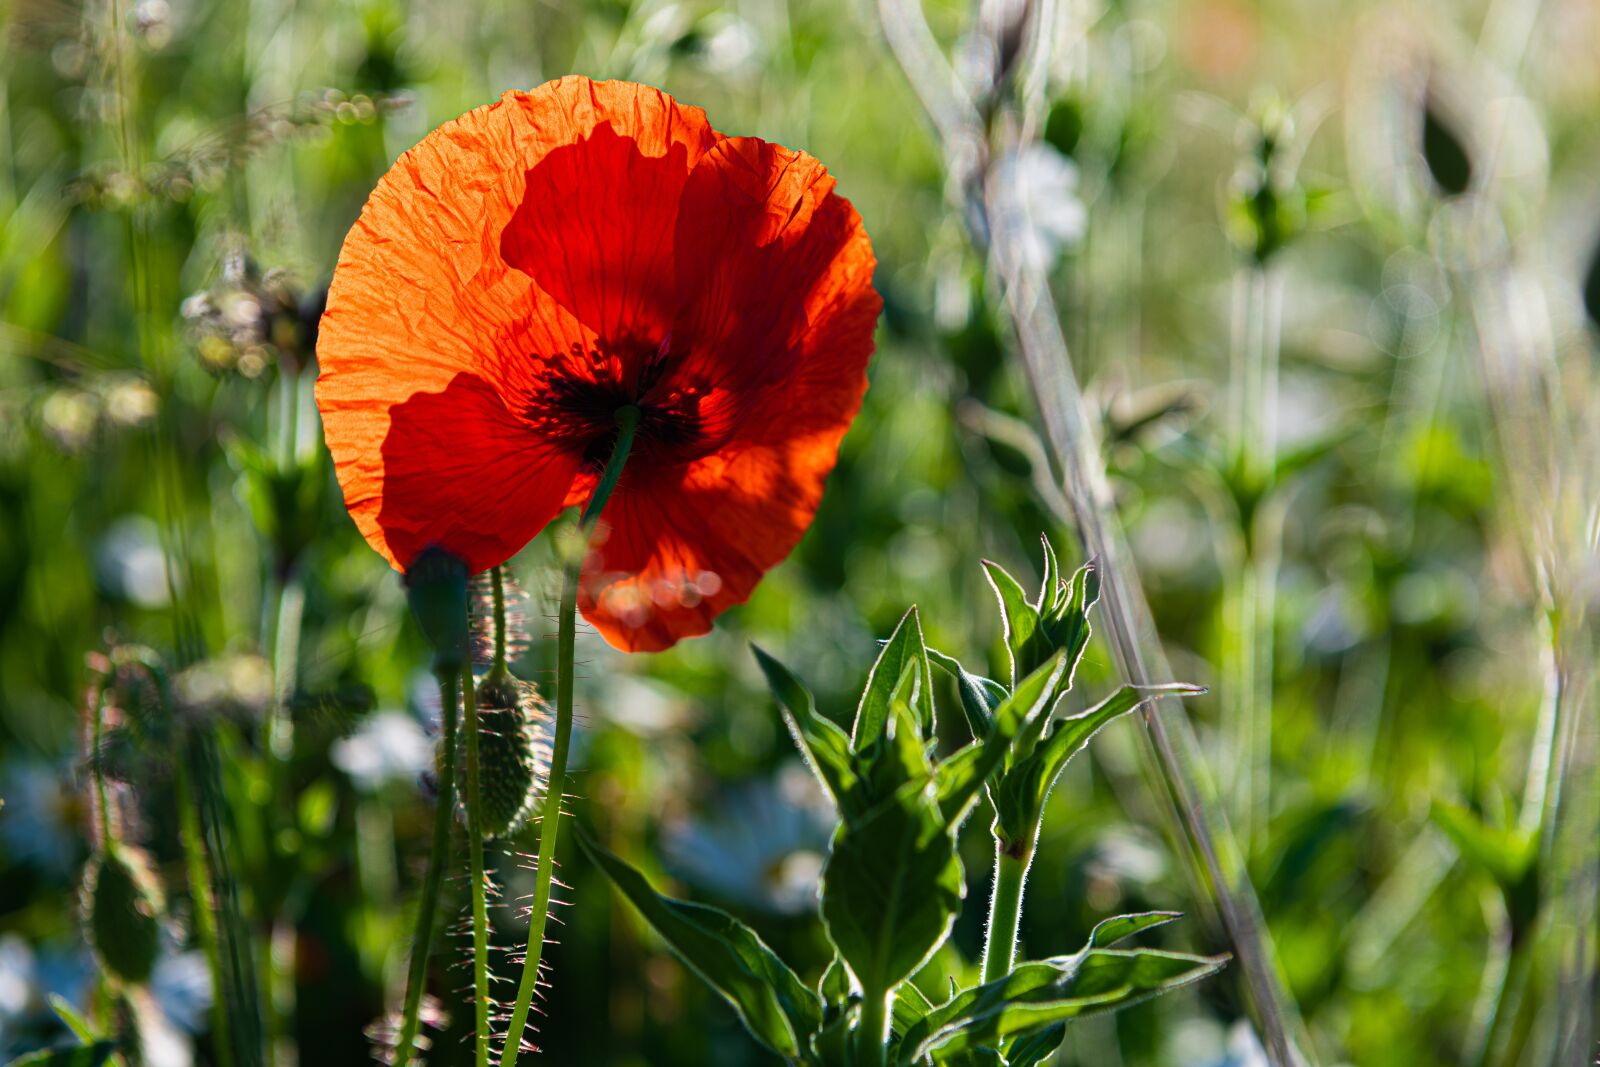 Nikon Z7 sample photo. Poppy, poppy flower, backlighting photography